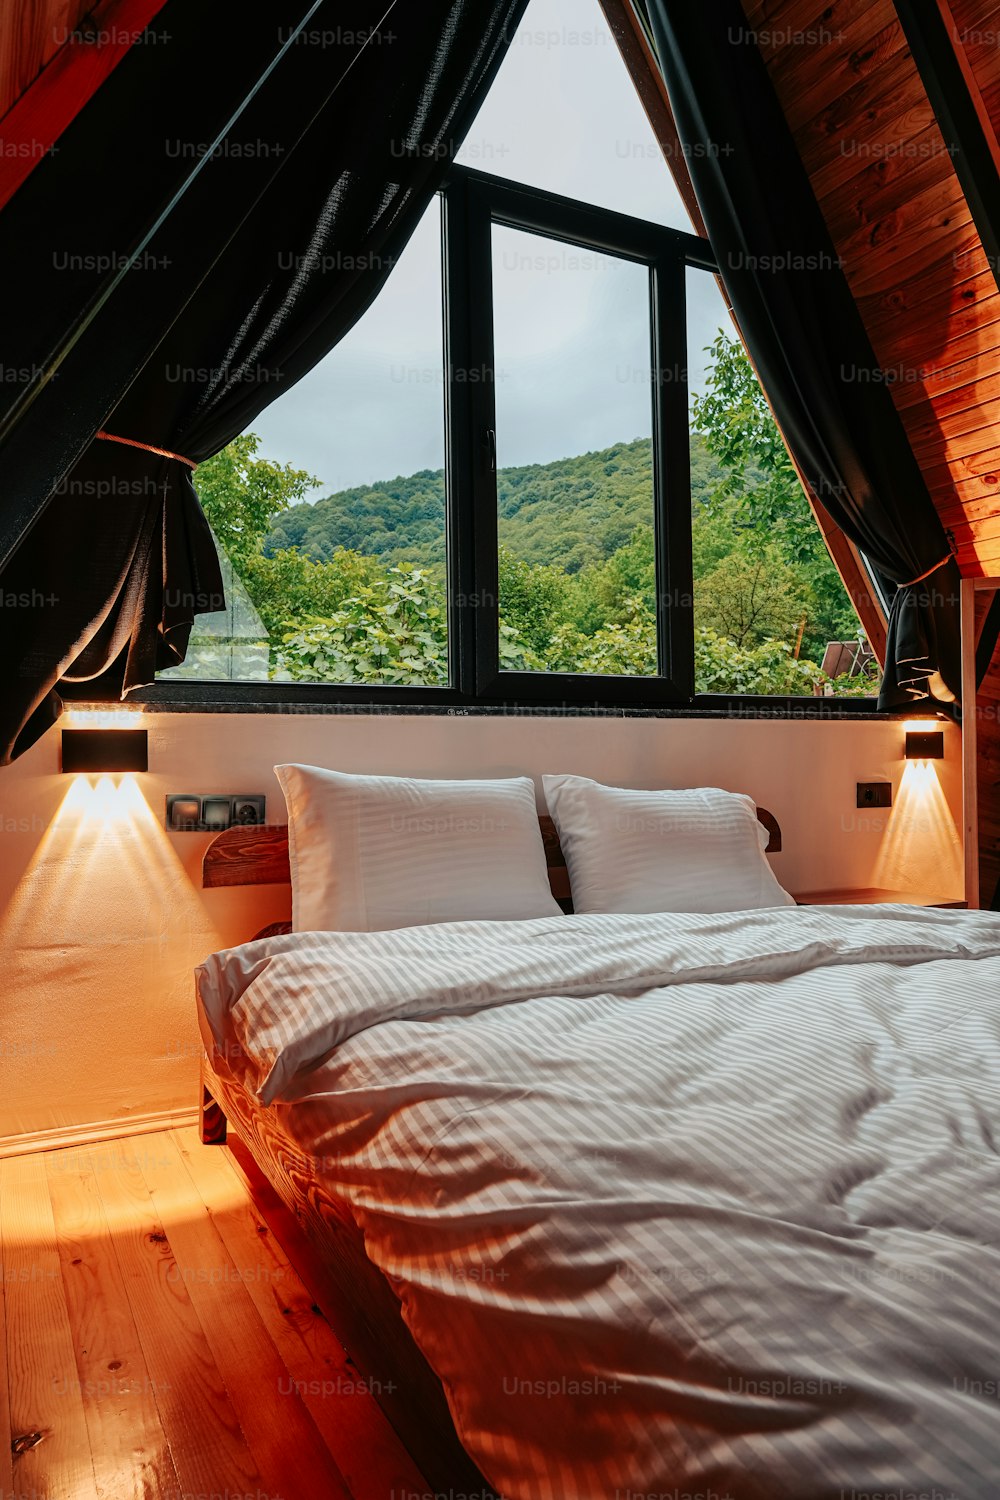 ein Bett, das unter einem Fenster in einem Schlafzimmer sitzt